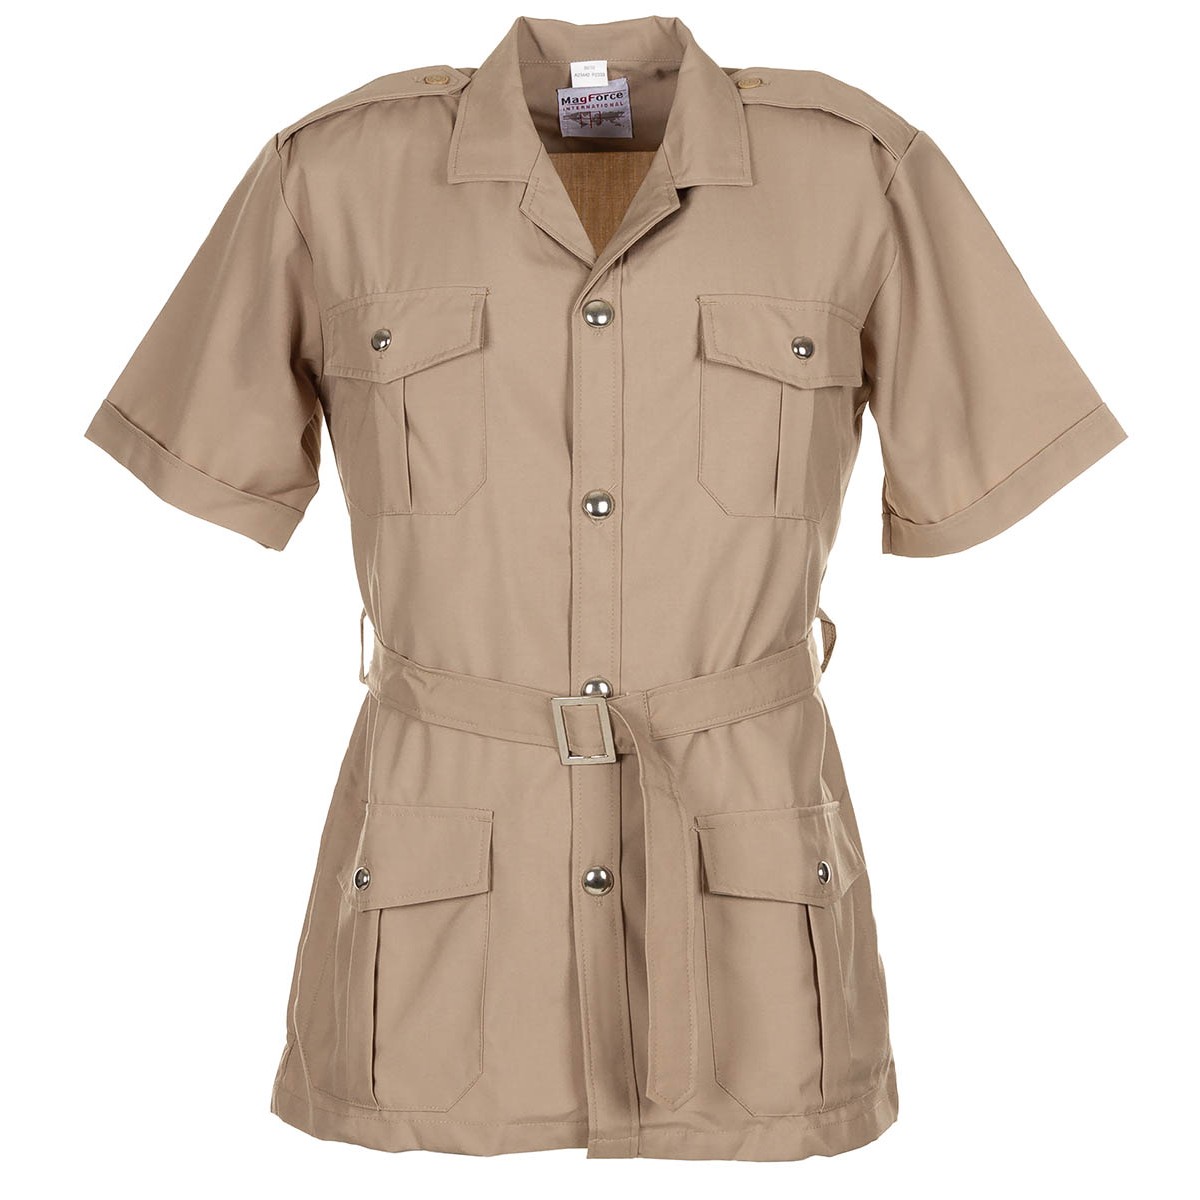 Tropická blůza francouzská košile Safari khaki MagForce® Velikost: 120 dlouhý rukáv